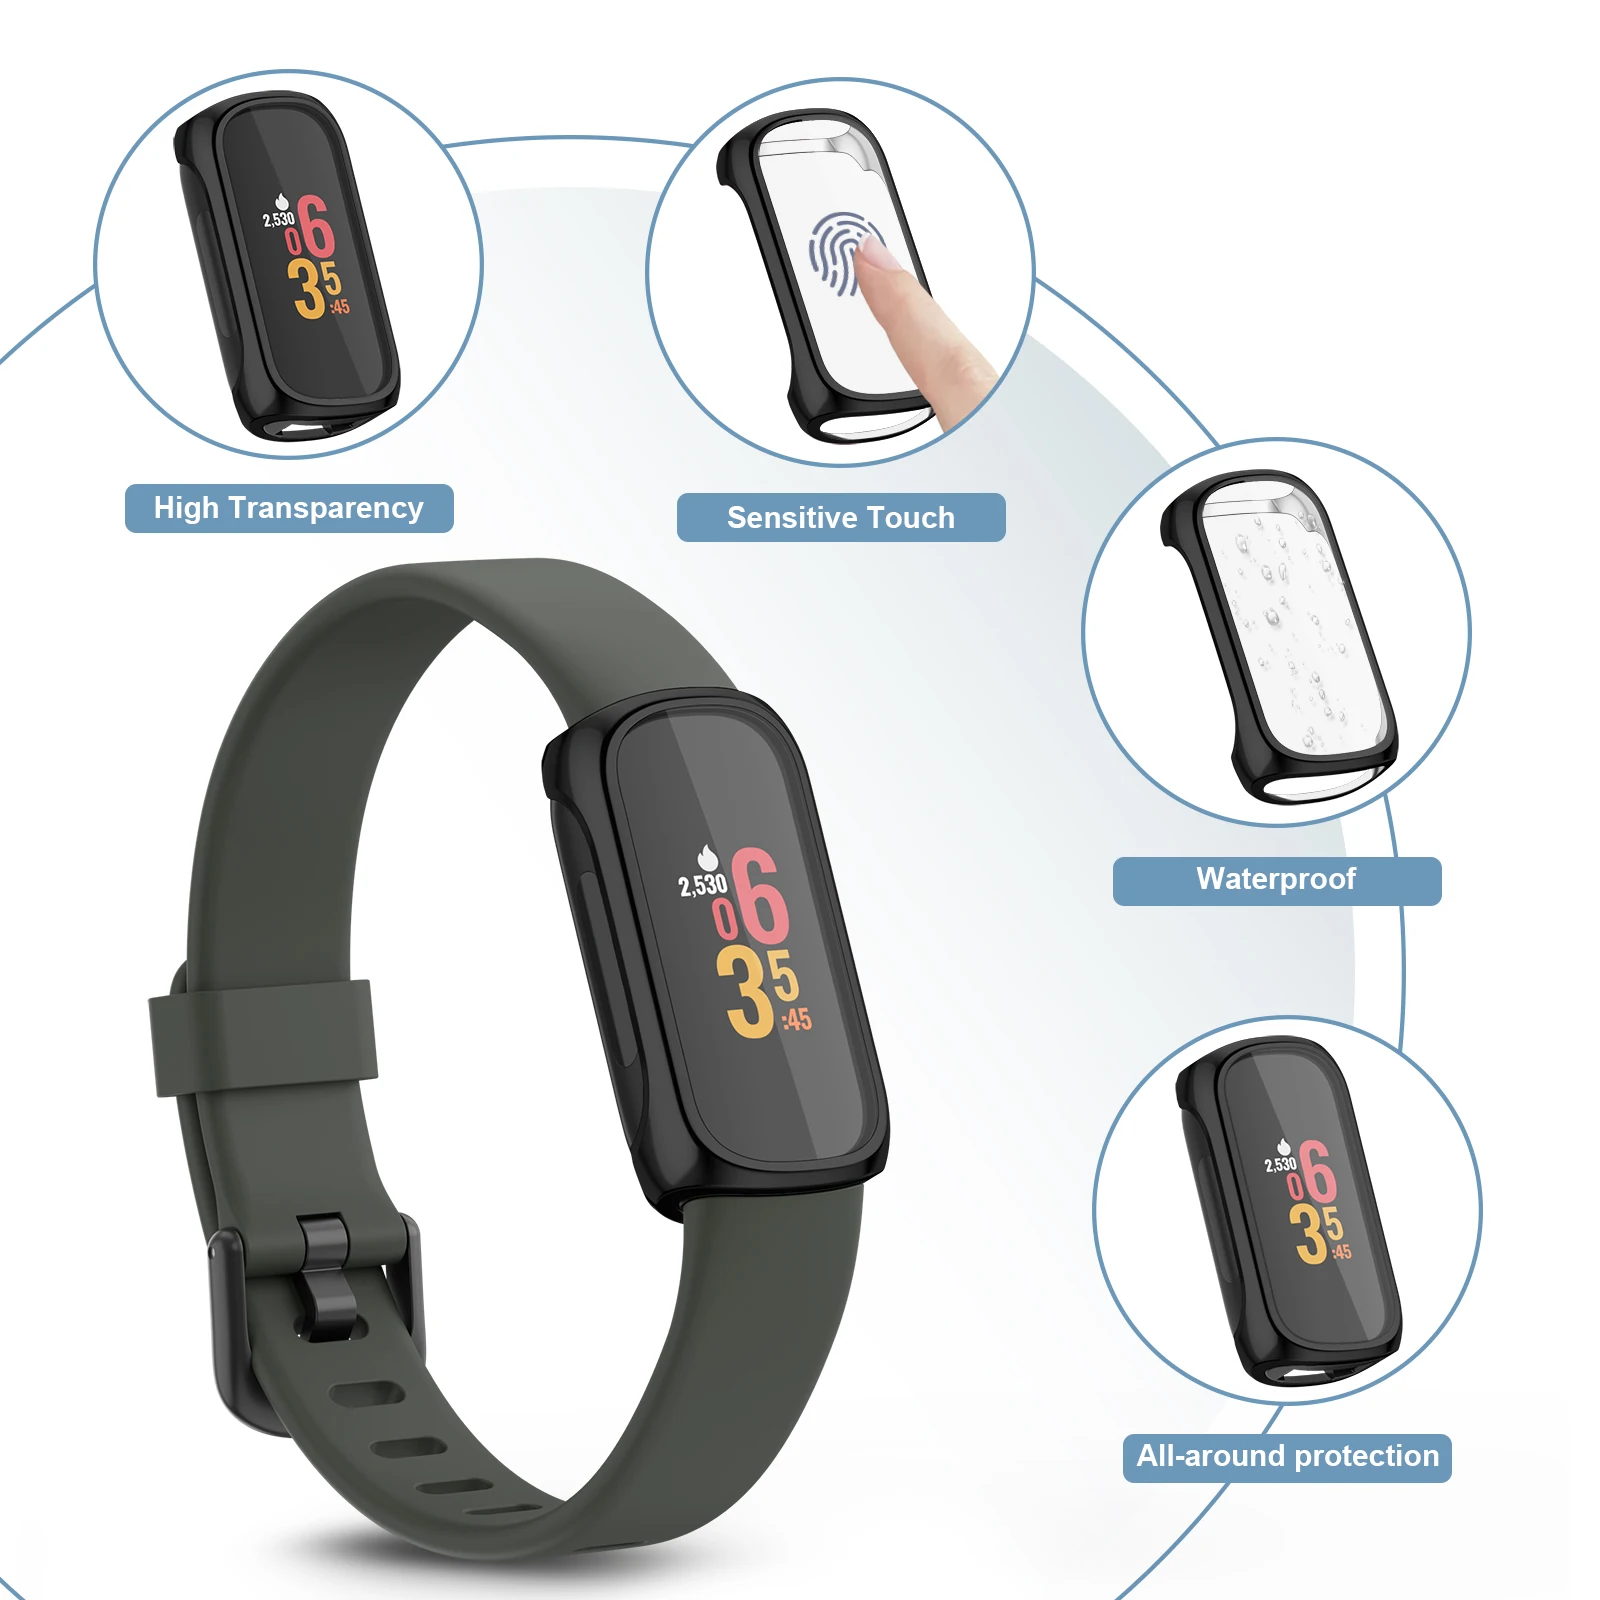 Coque de protection complète en TPU souple pour Fitbit, protection d'écran pour Fitbit inspire 2, 3, coque de protection pare-chocs